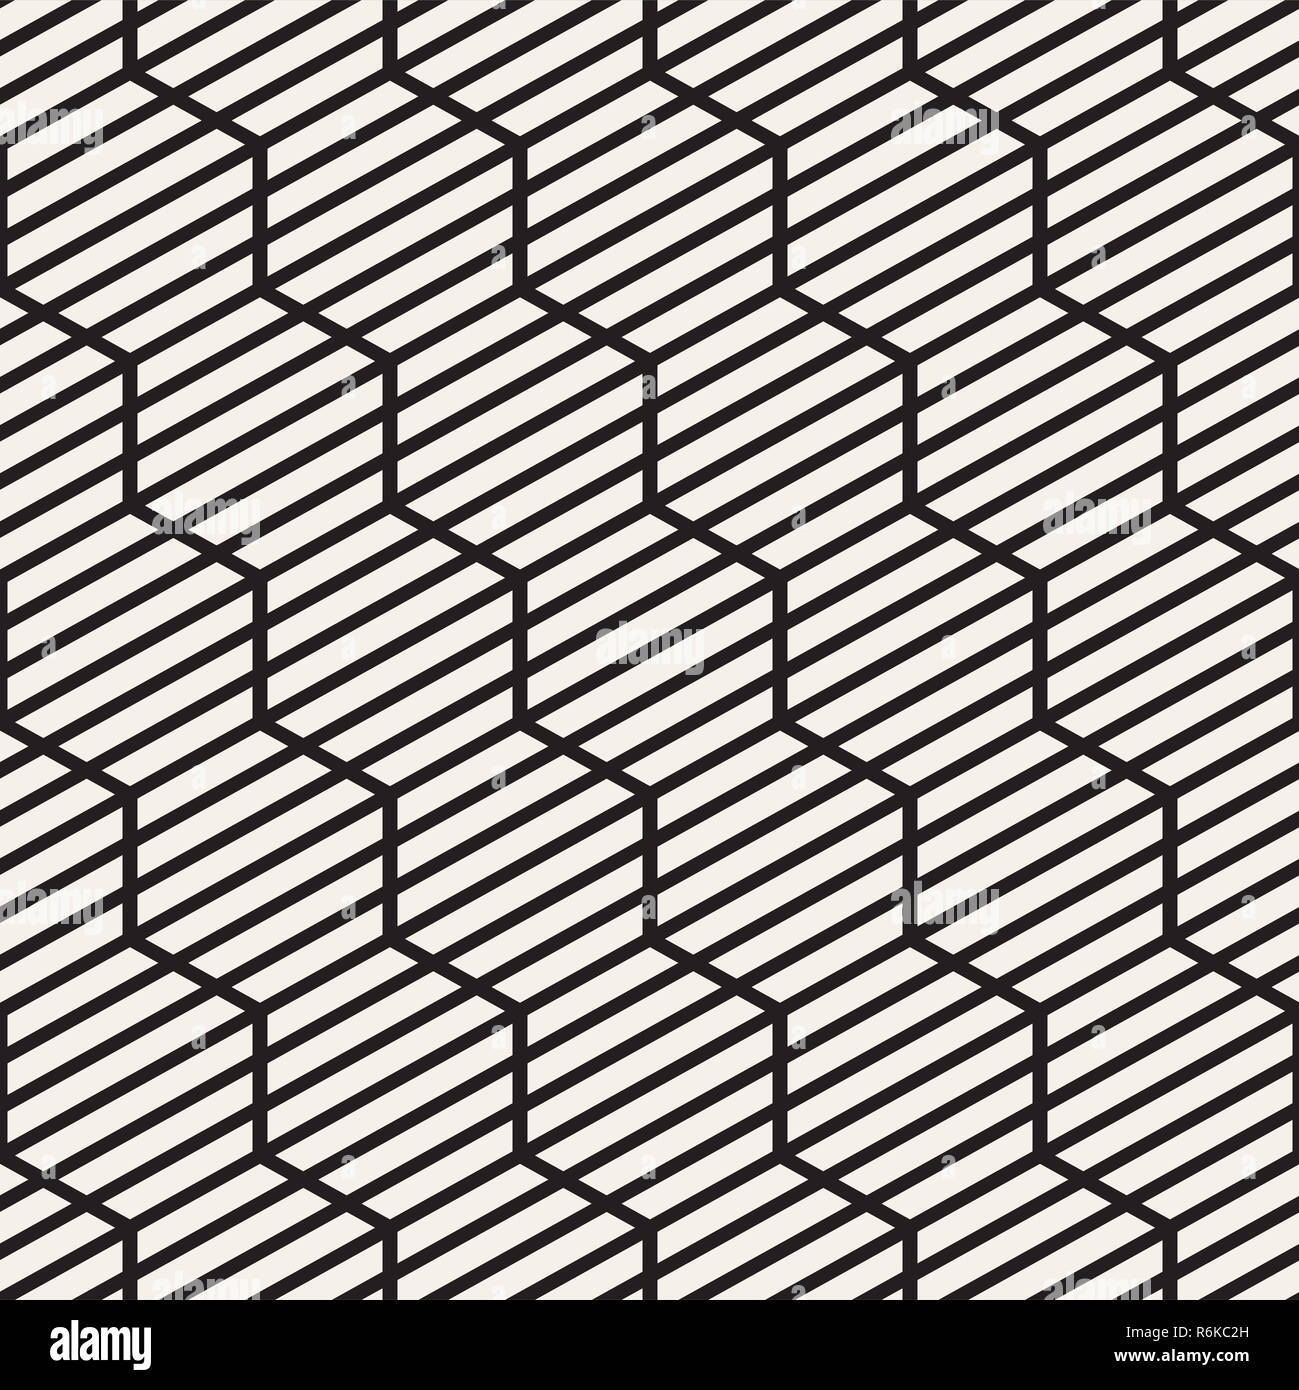 Vektor nahtlose Streifen Muster. Moderne, elegante Textur mit Schwarzweiß-Gitter. Wiederkehrende geometrische hexagonalen Gitter. Einfache lattice Design. Stockfoto